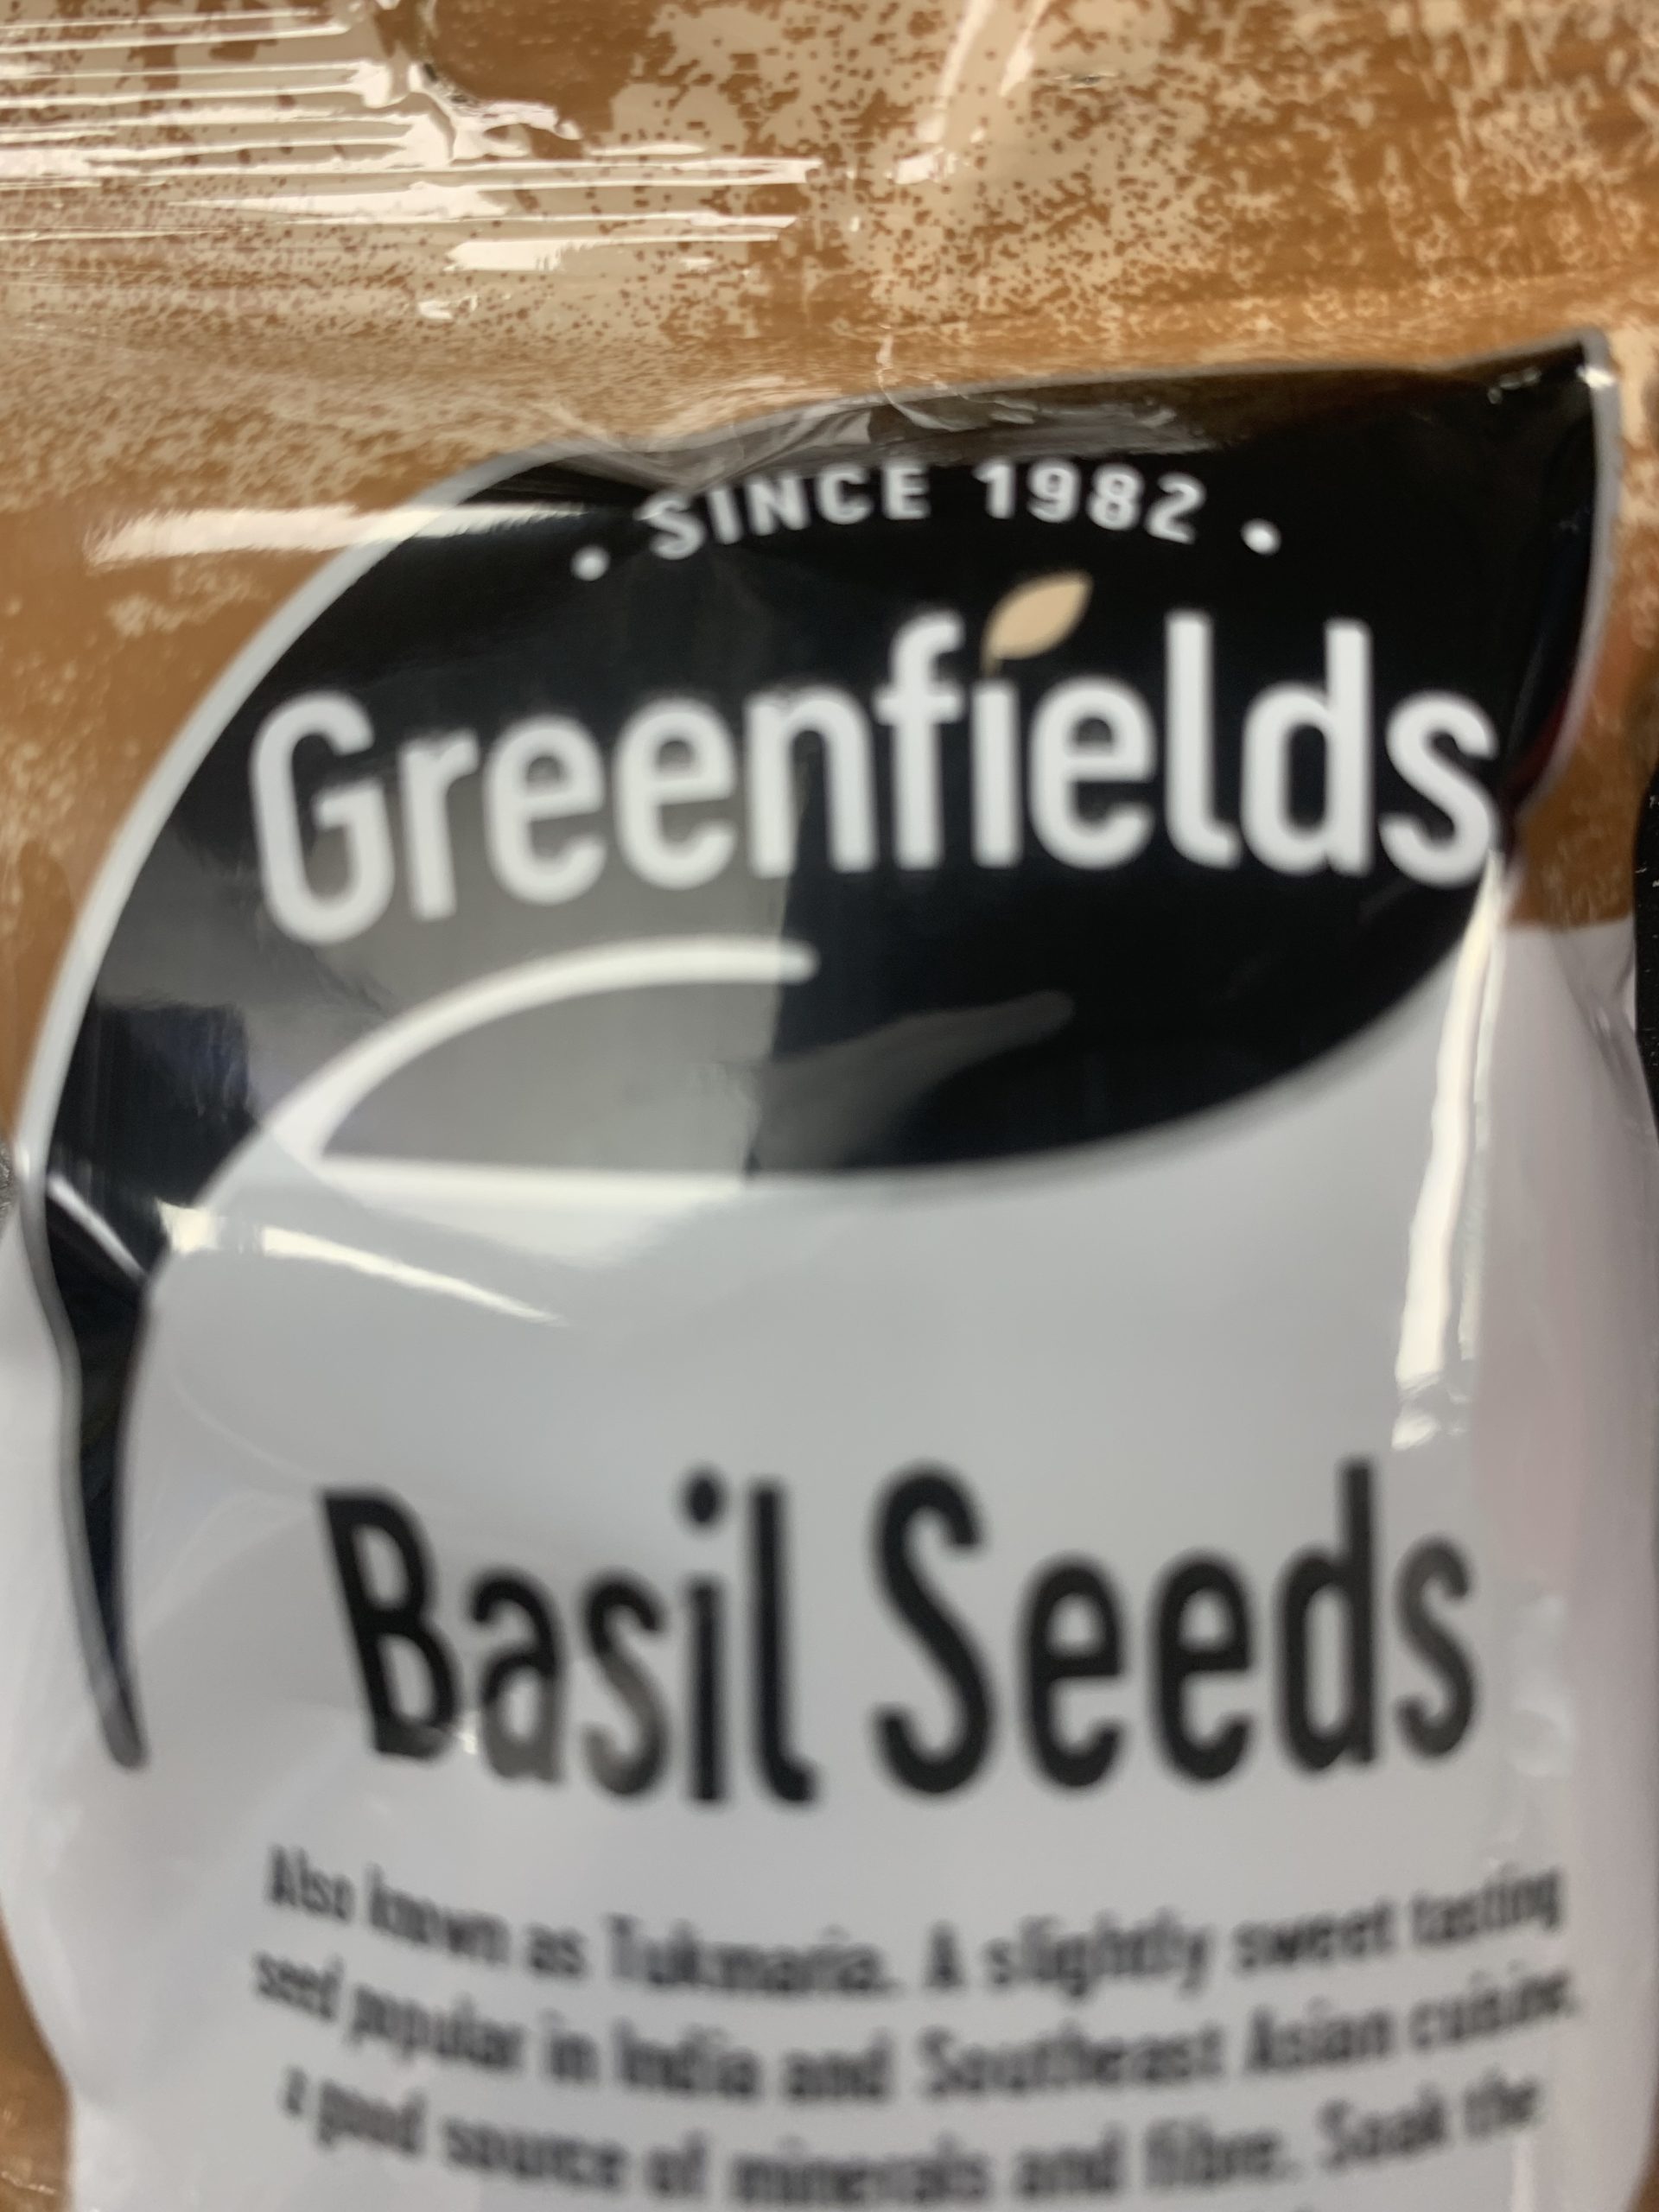 Greenfields Basil Seeds 100g